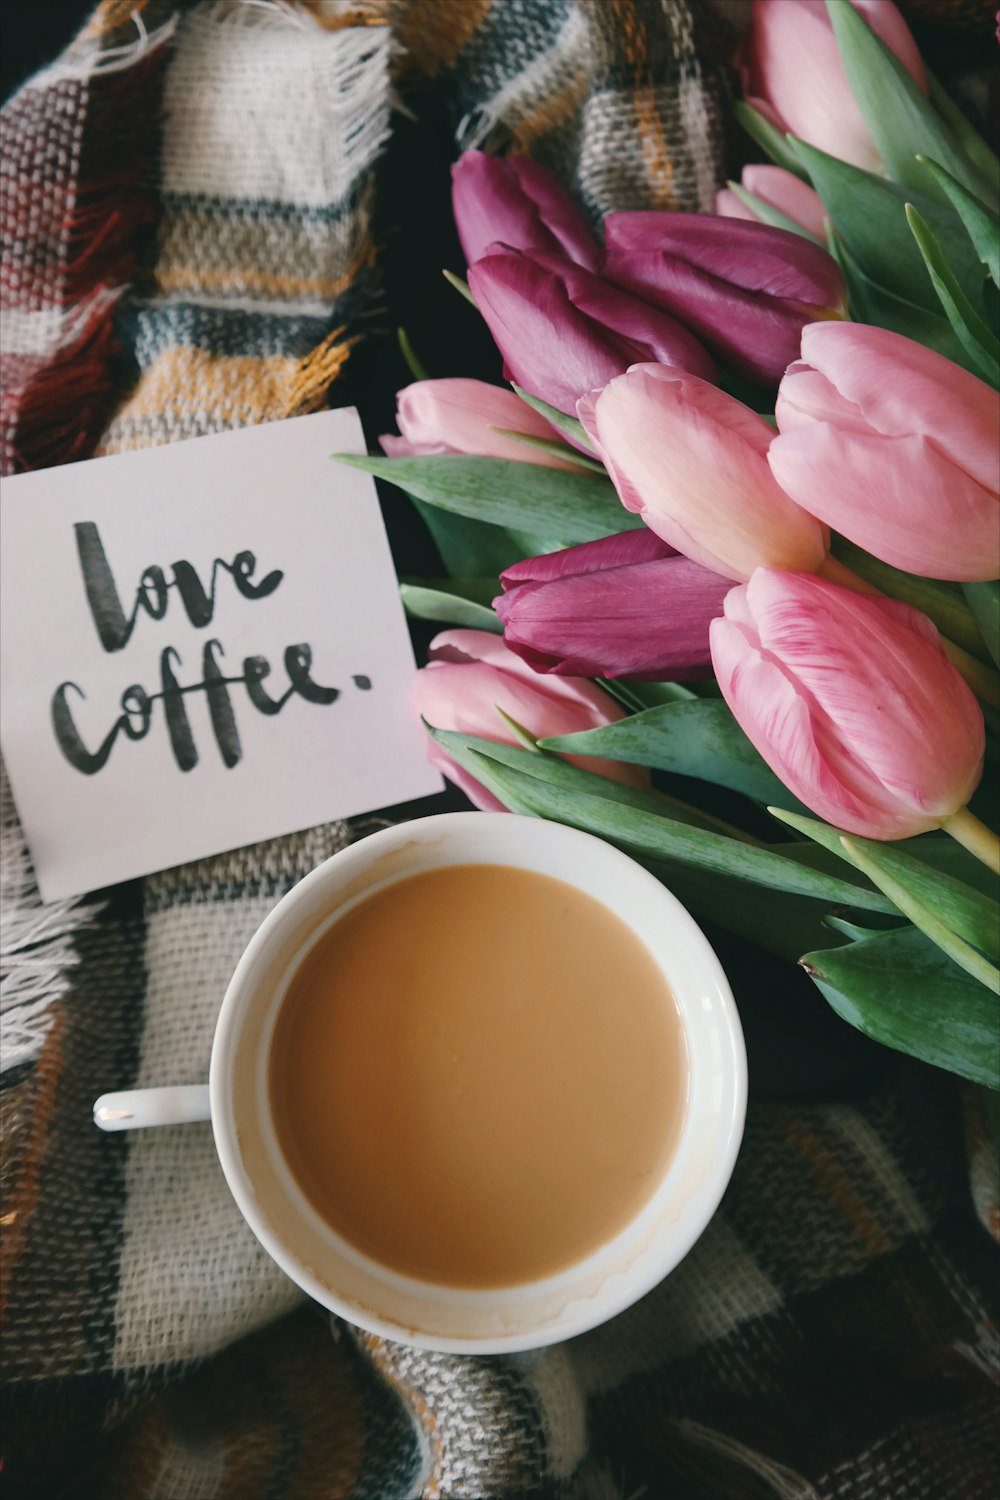 「ラブコーヒー」と、クリーミーなコーヒーと花の隣にメモを。